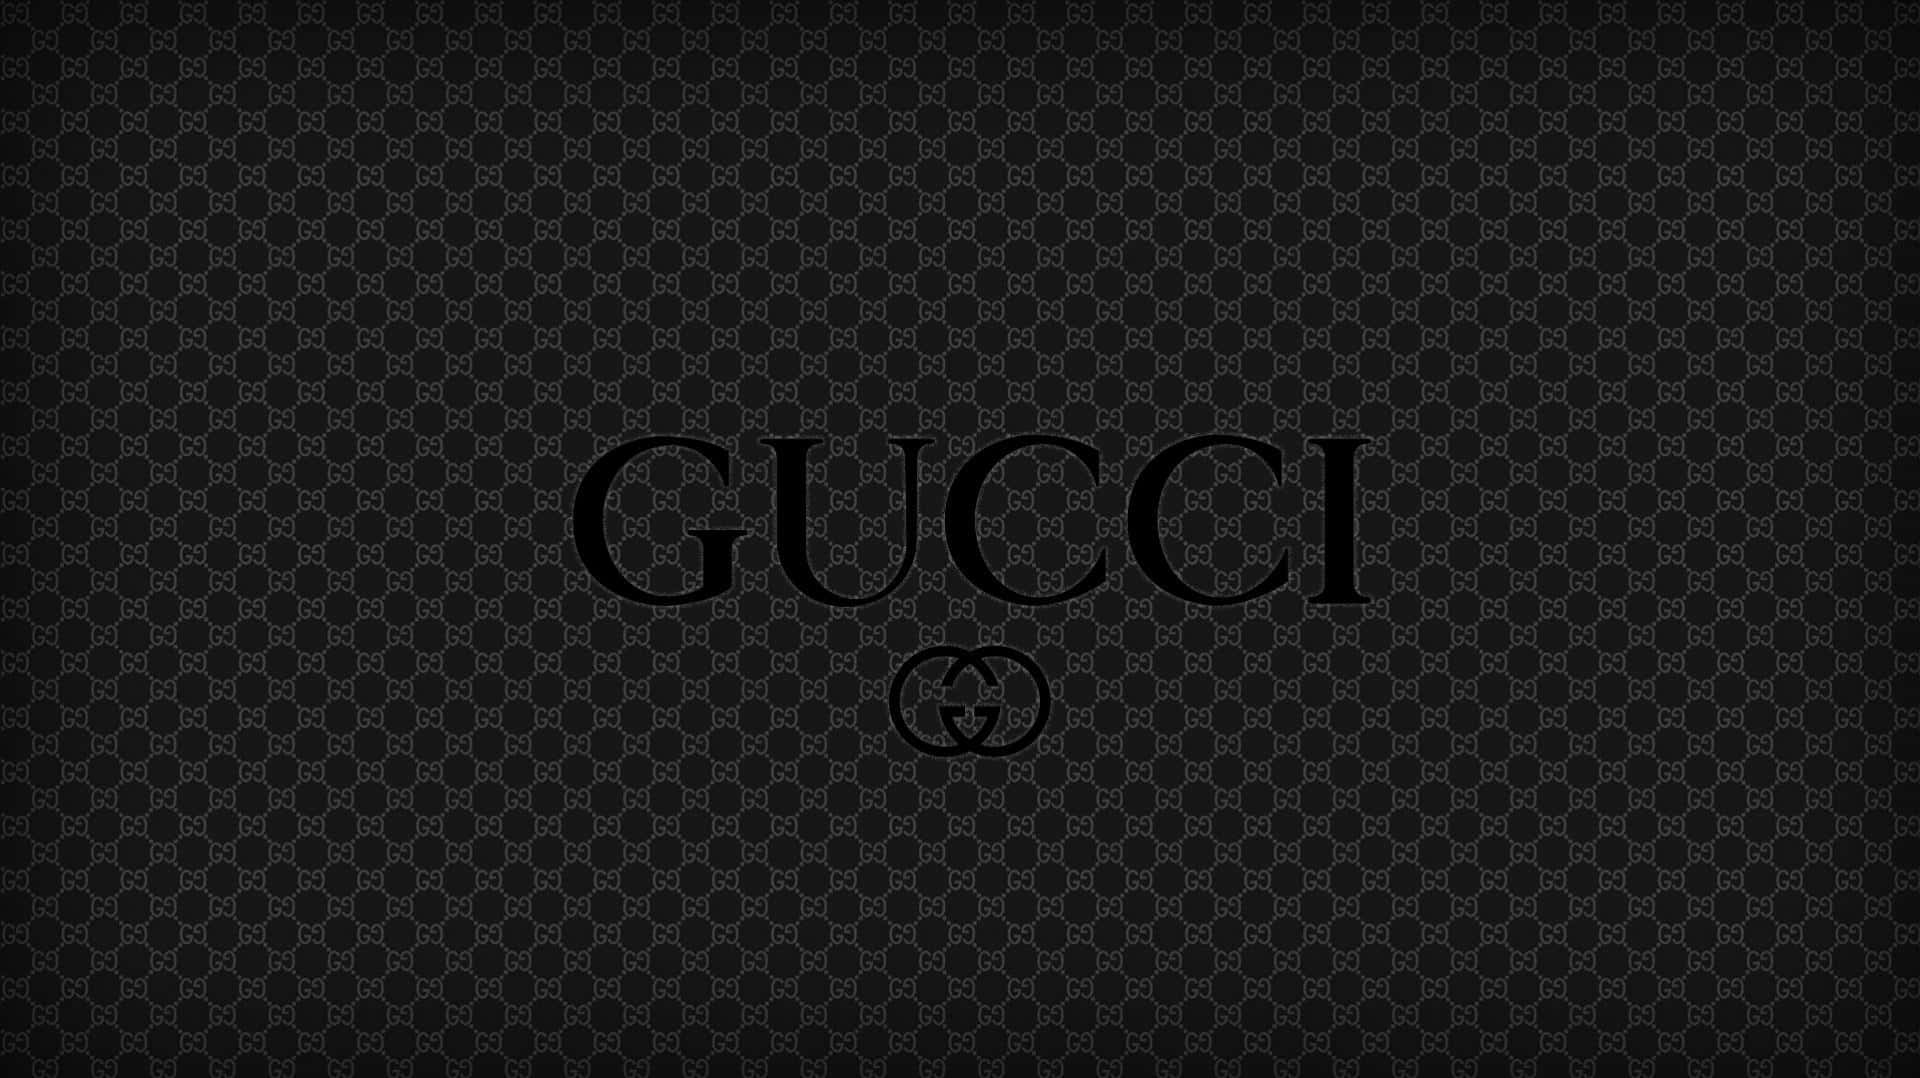 Download Expensive Gucci Logo Wallpaper | Wallpapers.com